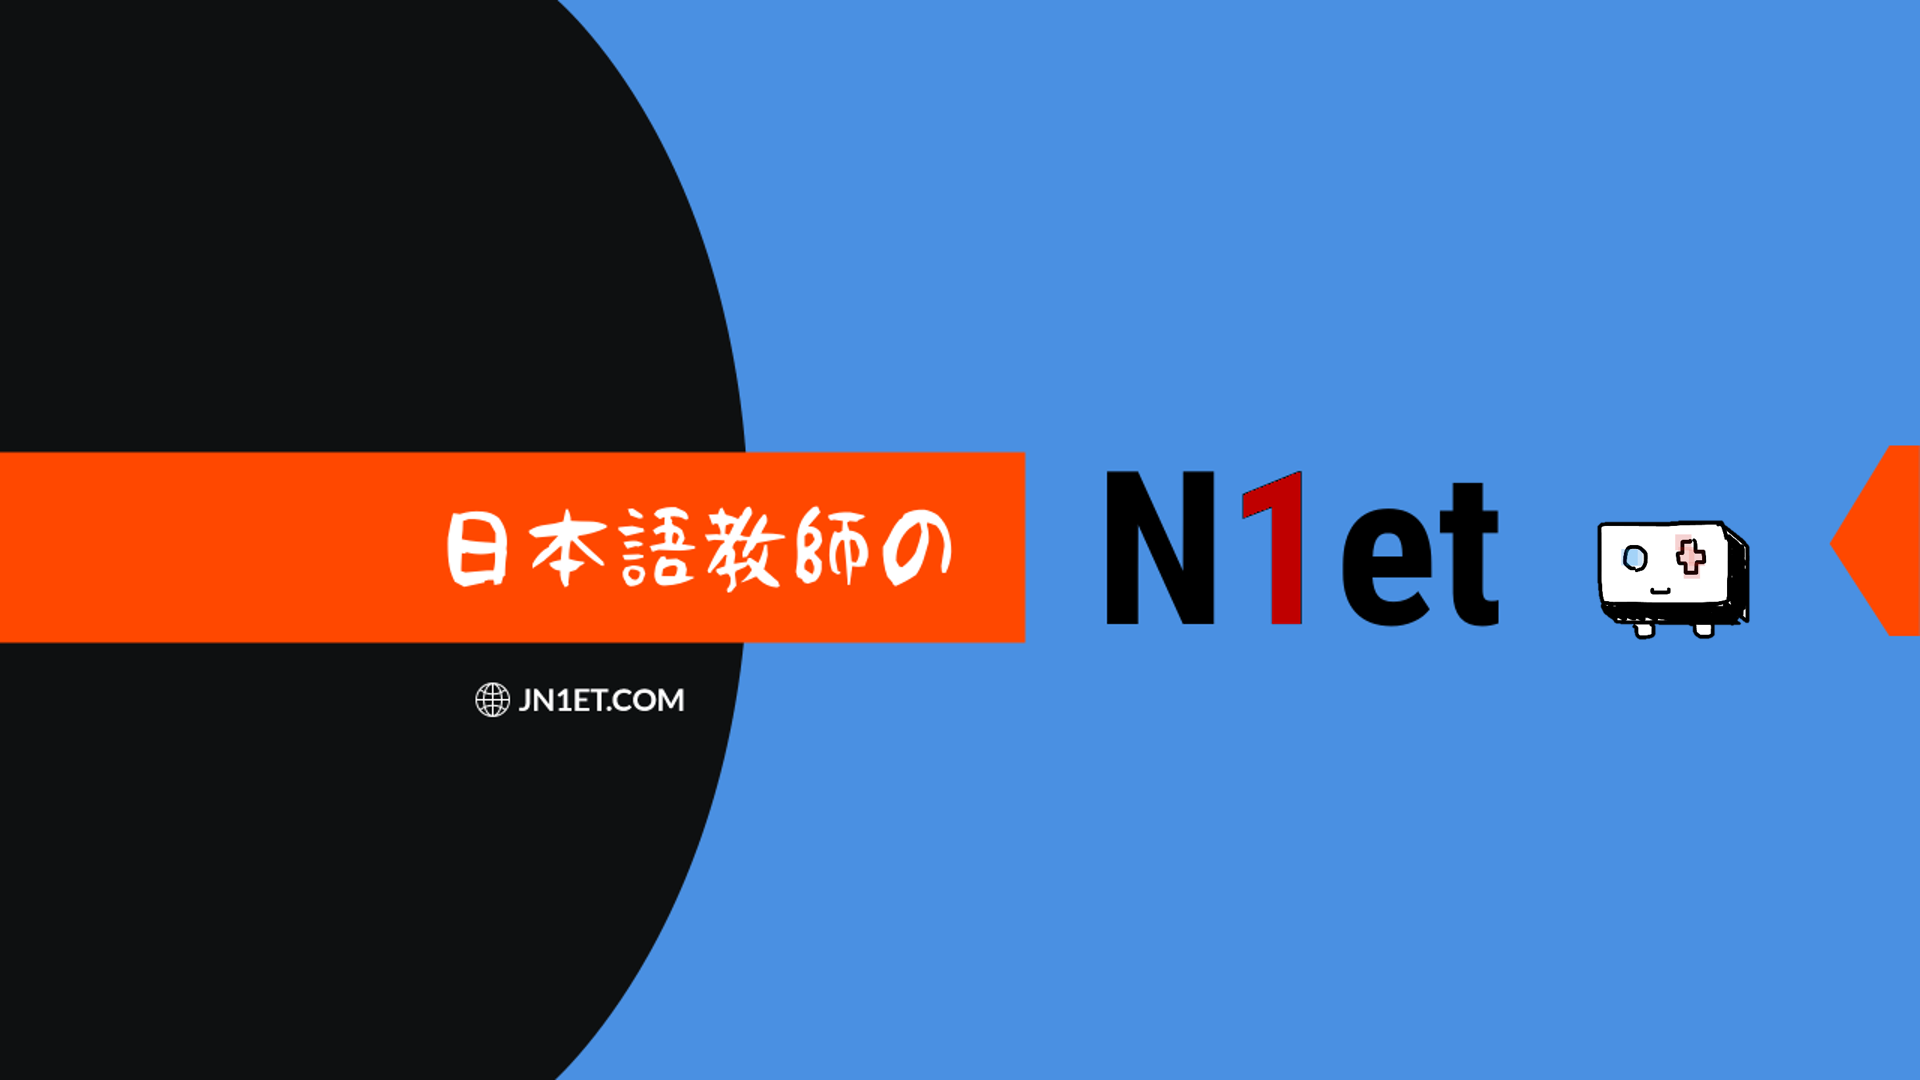 日本語教育機関で用いられる単語の意味とその略称 日本語教師のn1et